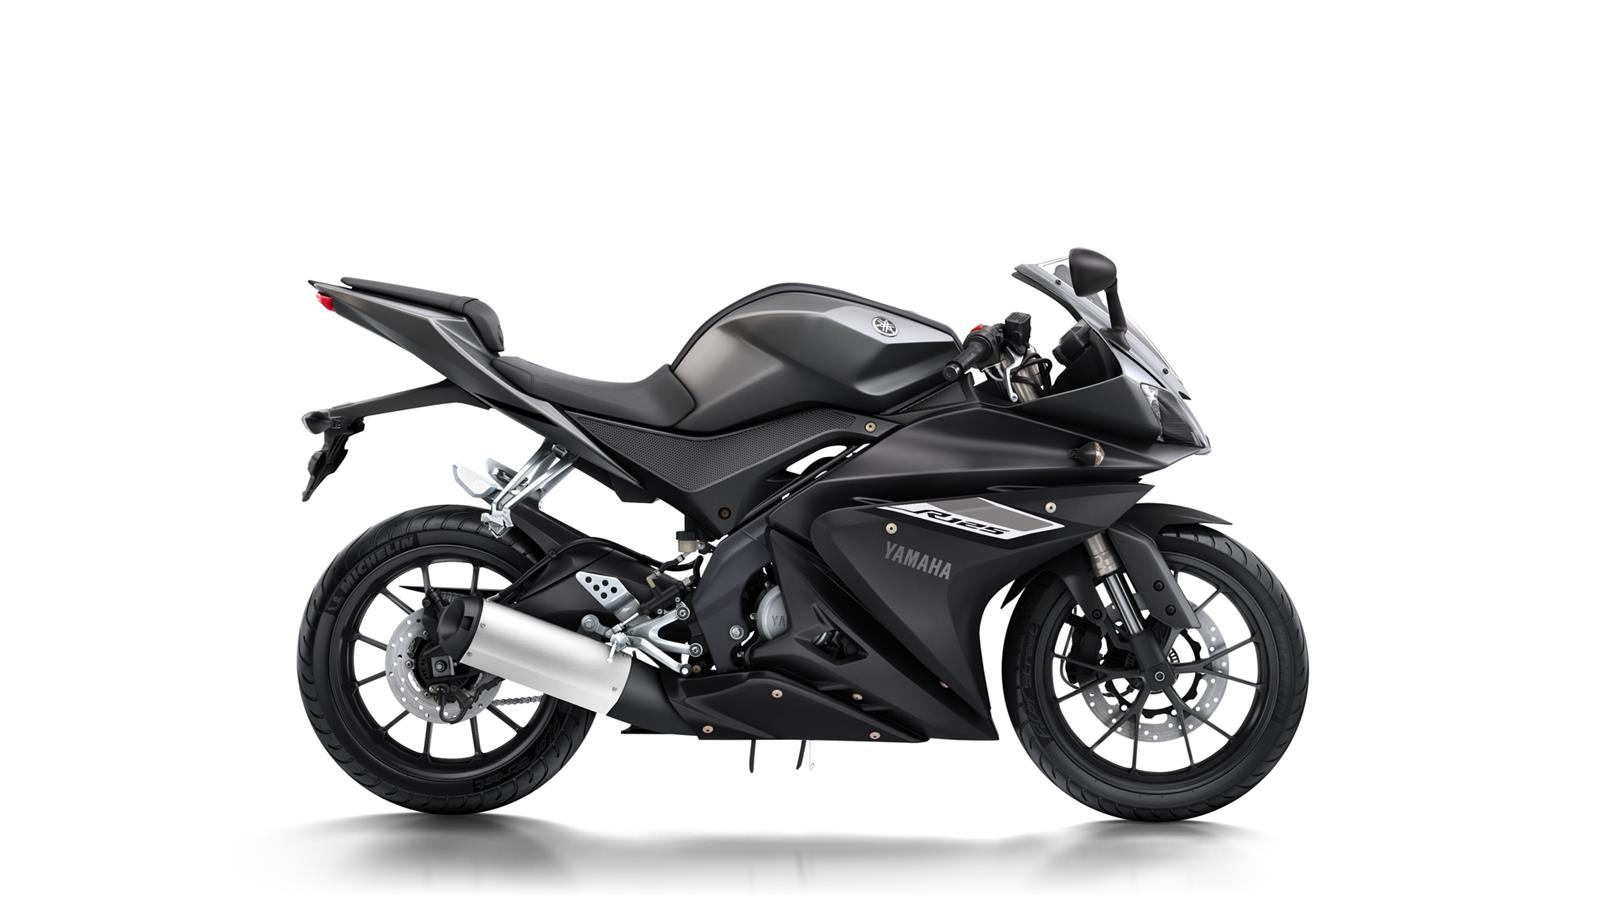 Tecnologia collaudata nelle competizioni, DNA R- Series Per Yamaha la classe 125 cc è molto importante.